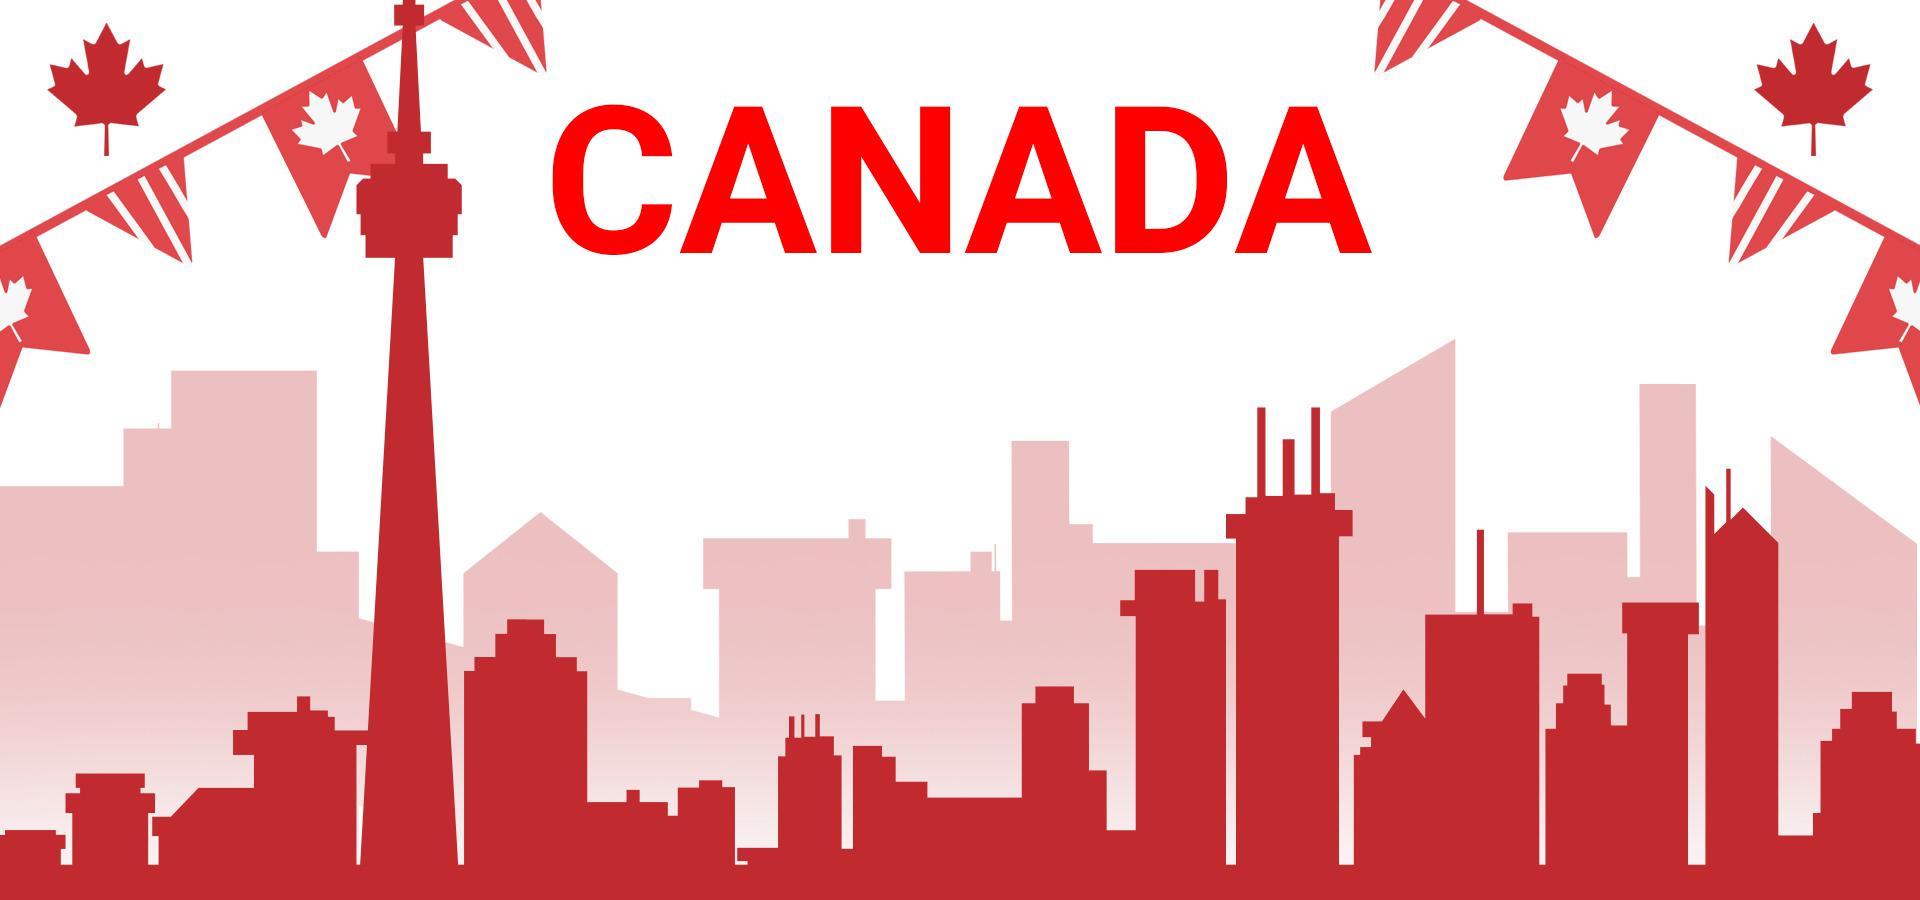 EXPRESS ENTRY KHÔNG PHẢI LÀ CON ĐƯỜNG DUY NHẤT ĐỂ ĐỊNH CƯ TẠI CANADA!!!